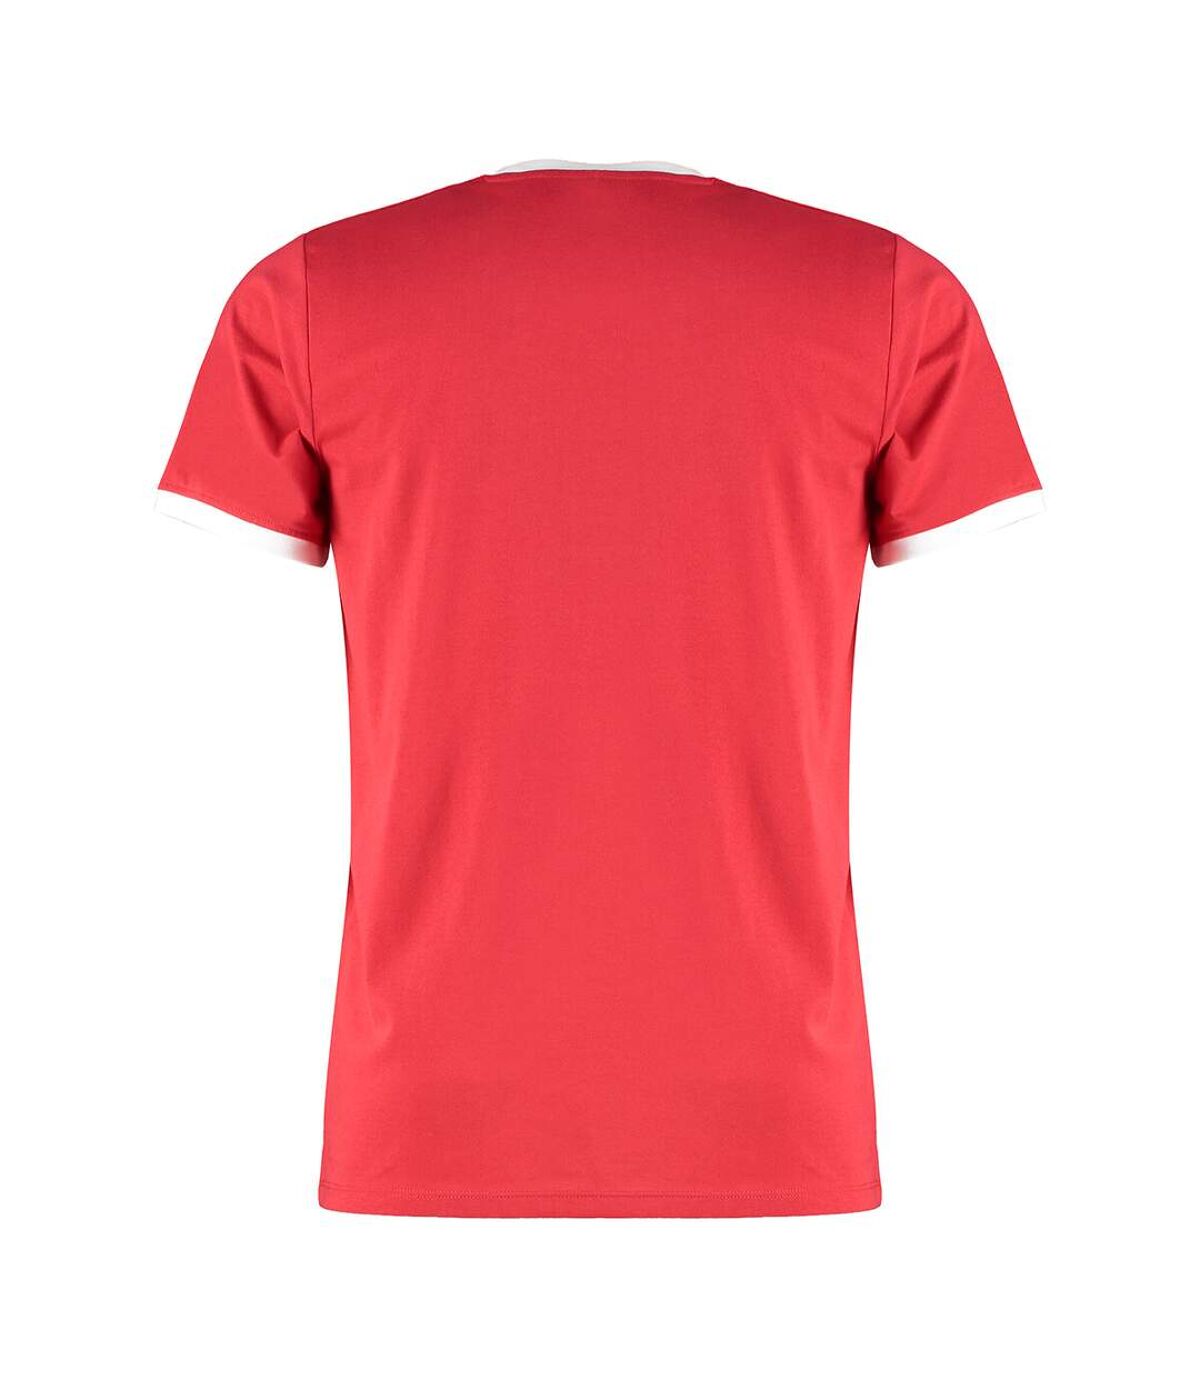 Kustom Kit T-shirt Ringer pour hommes (Rouge / blanc) - UTBC4781